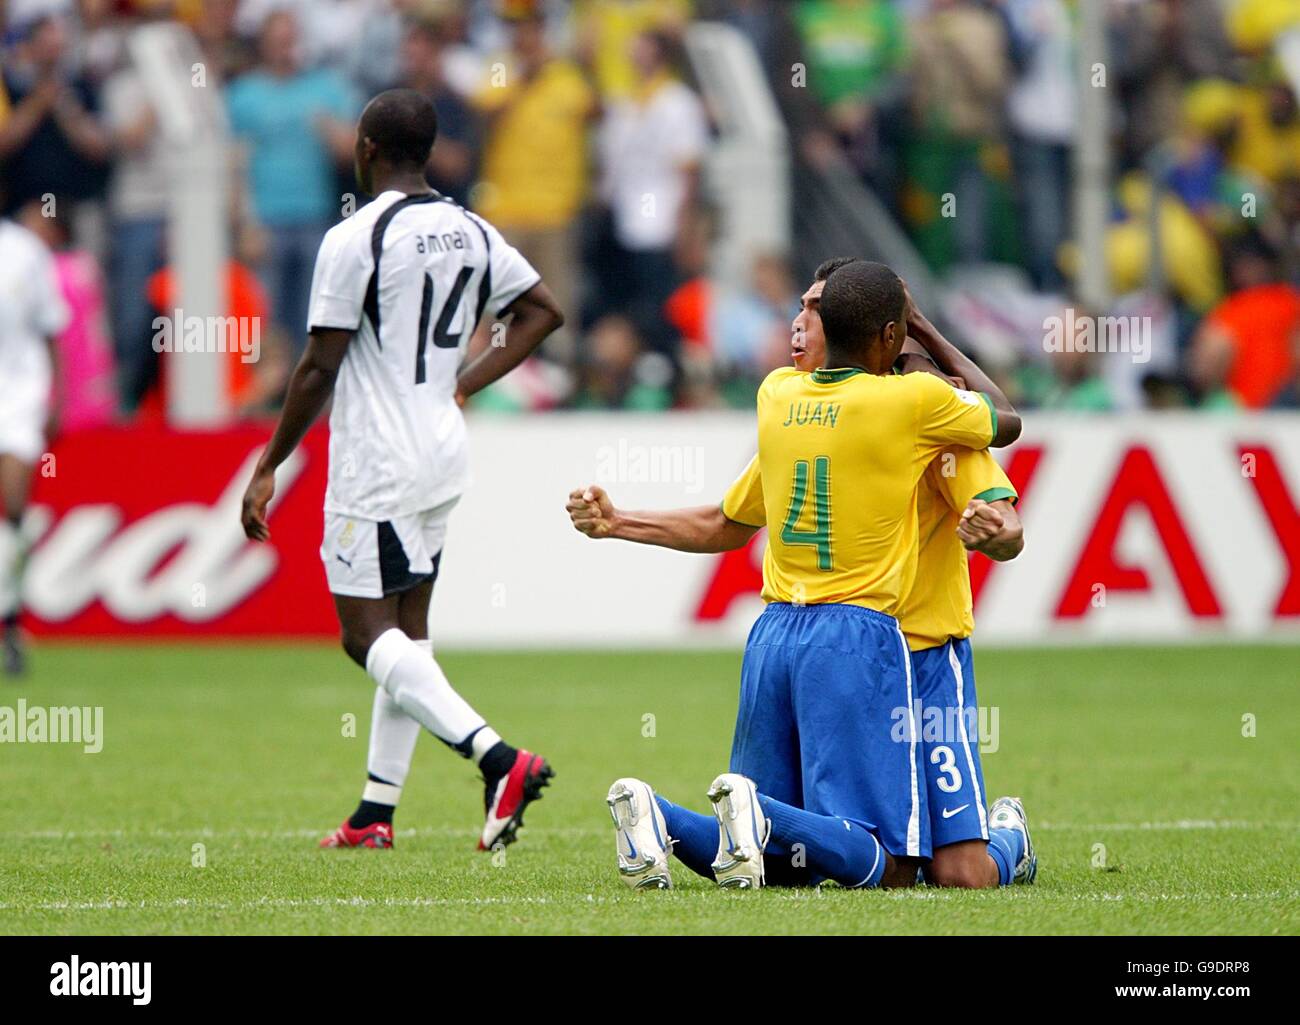 Seleção brasileira vence primeiro amistoso no ginásio  Nélio Dias